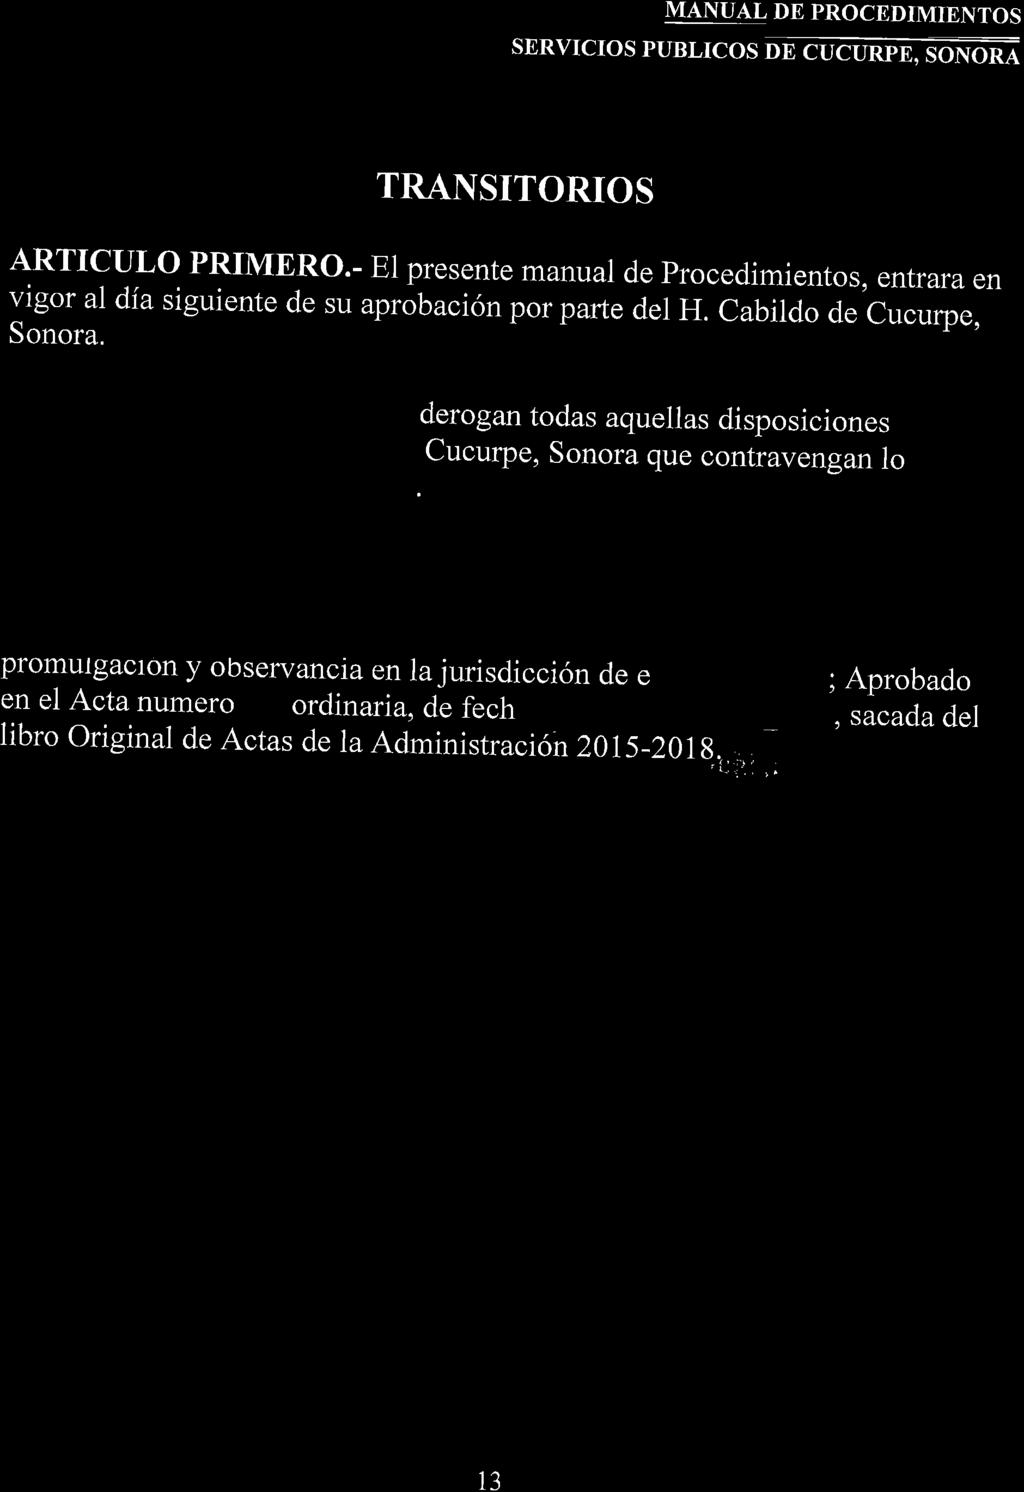 TRANSITORIOS ARTICULO PRIMERO.- El presente manual de Procedimientos, entrara en vigor al dia siguiente de su aprobación por parte der H. cabildo de cucurpe, Sonora.